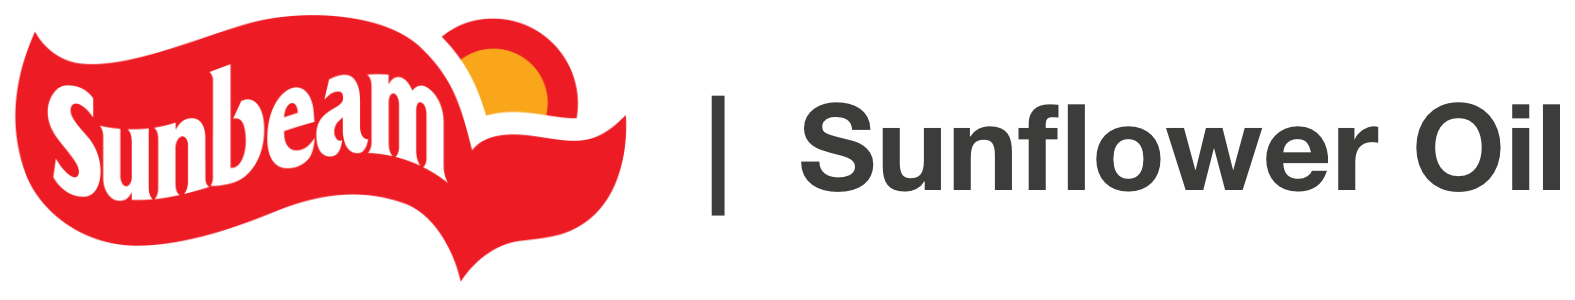 SUNBEAM Sunflower Oil logo